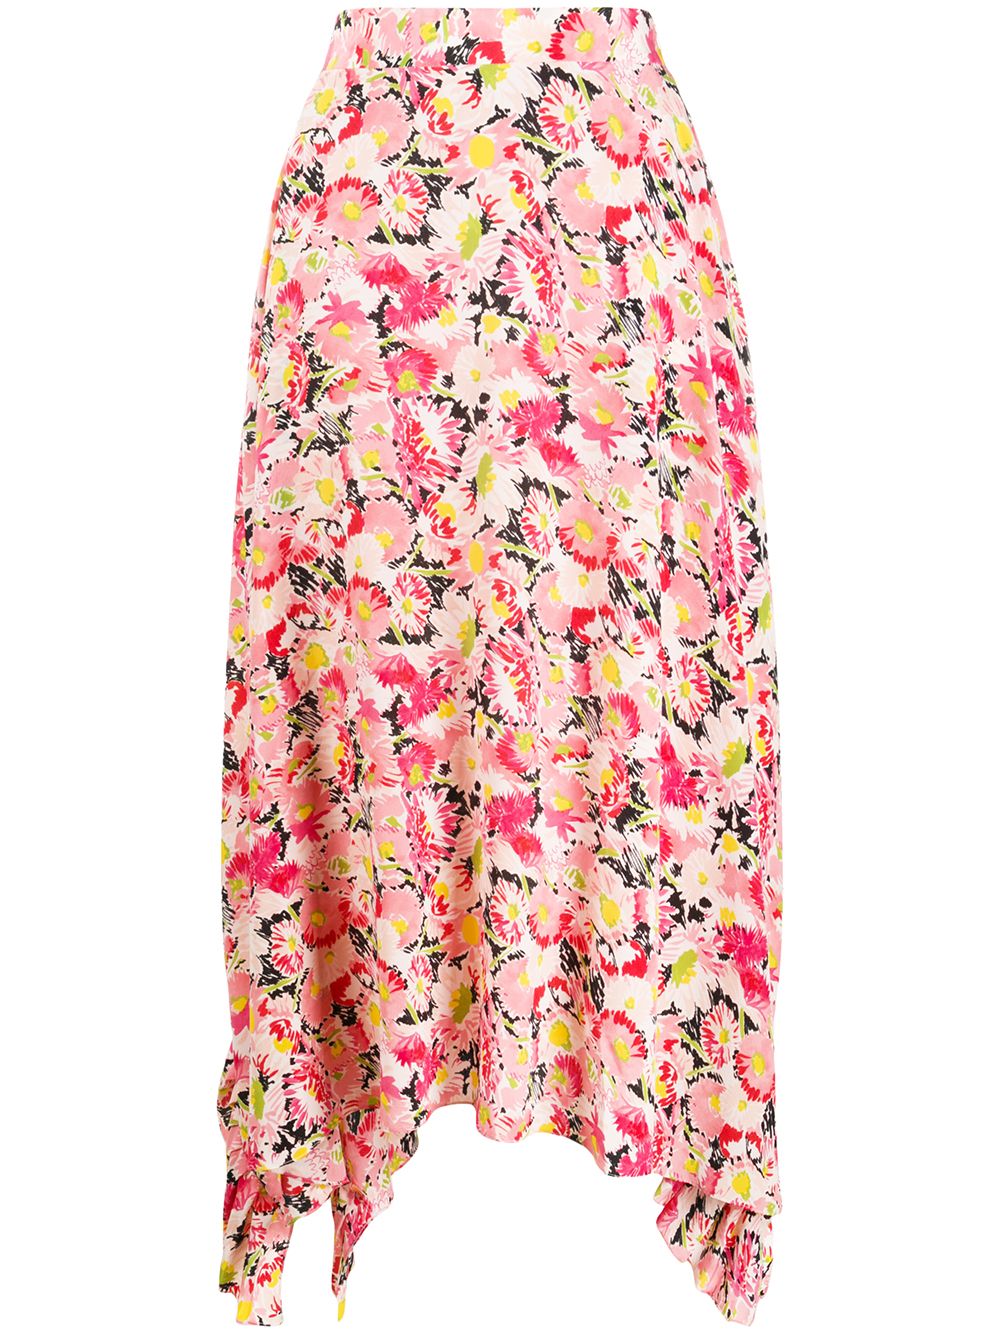 Stella McCartney cotton draped ruffle skirt in flower print - Pink von Stella McCartney